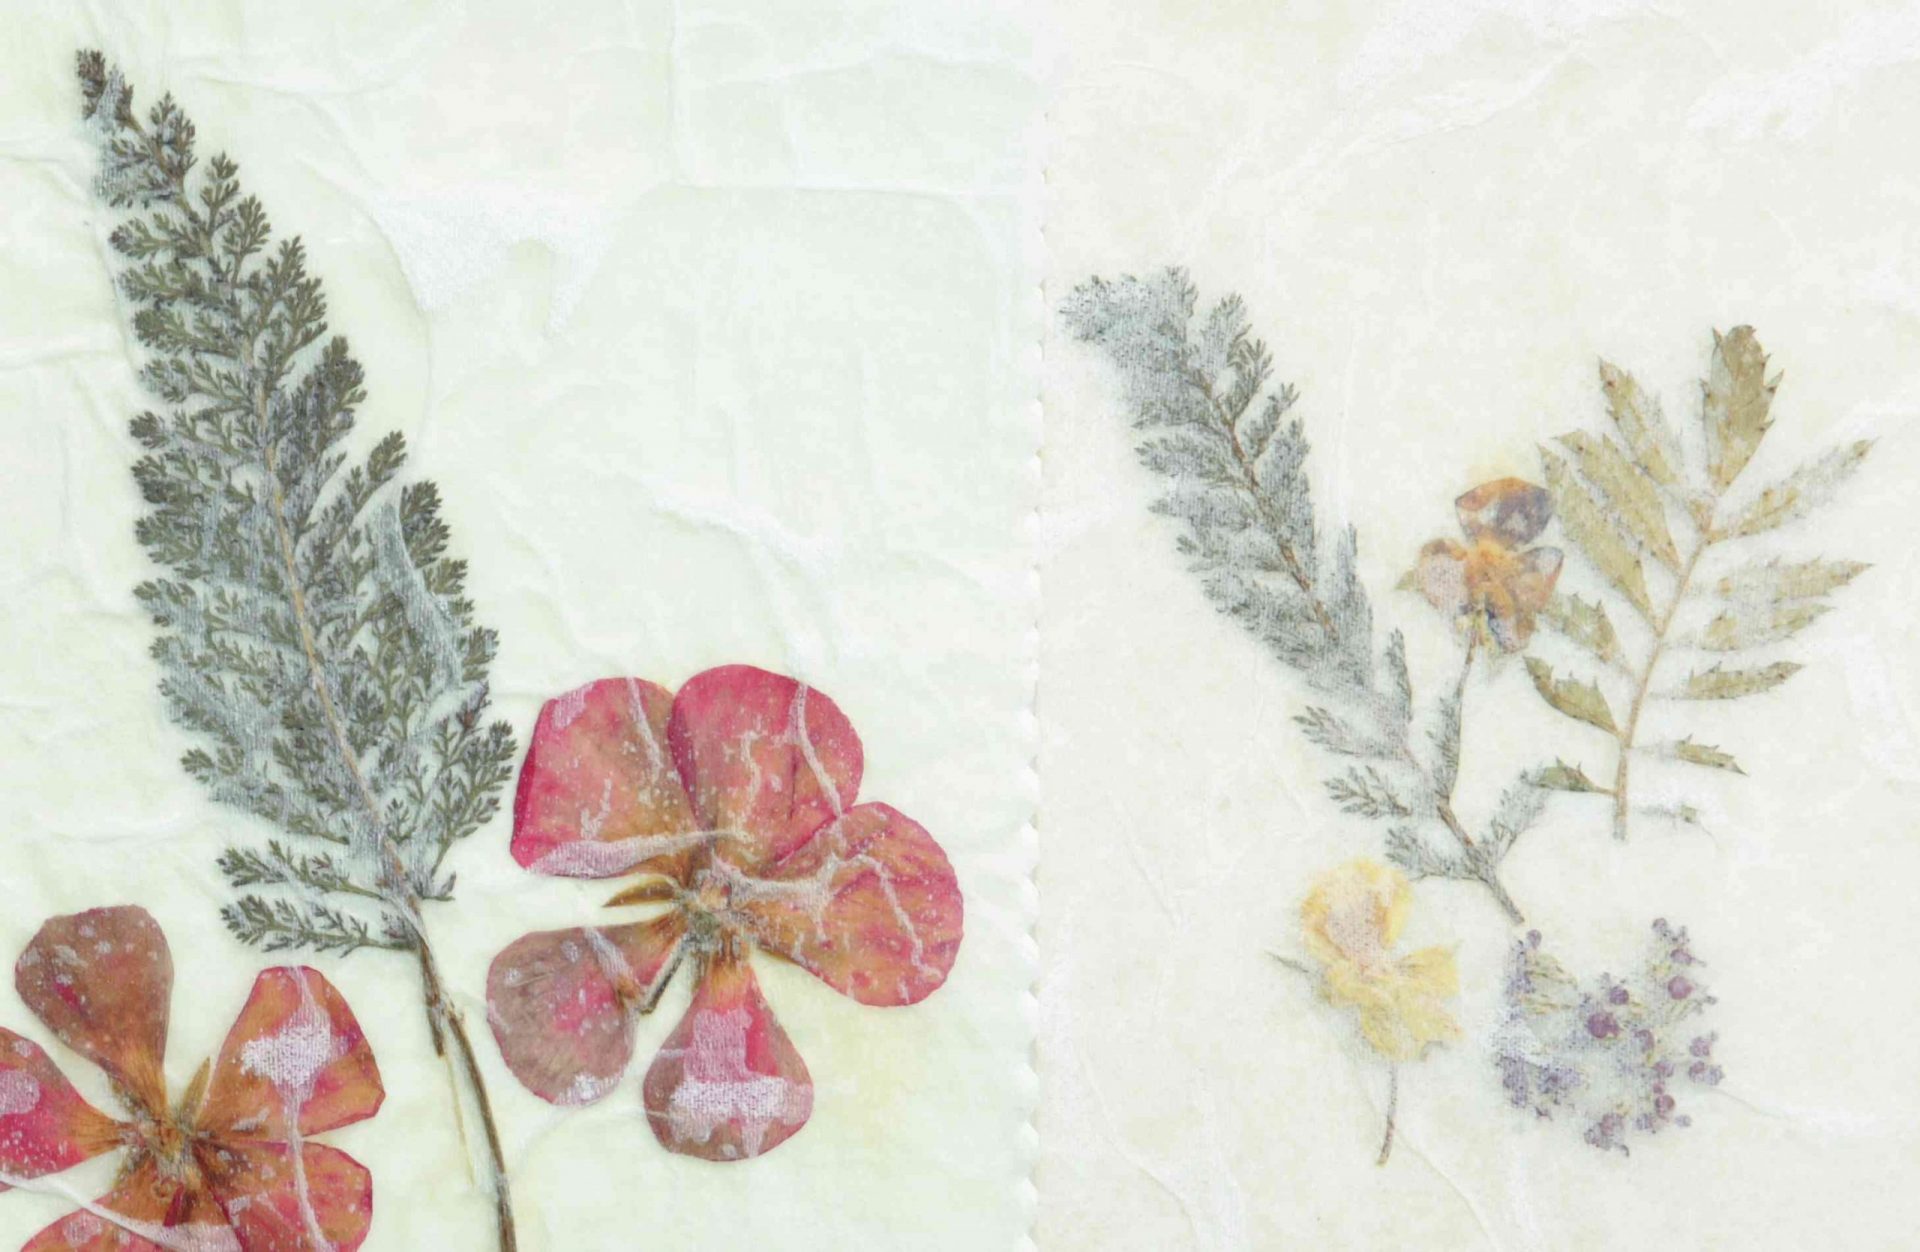 Papel pergamino de flores secas prensadas